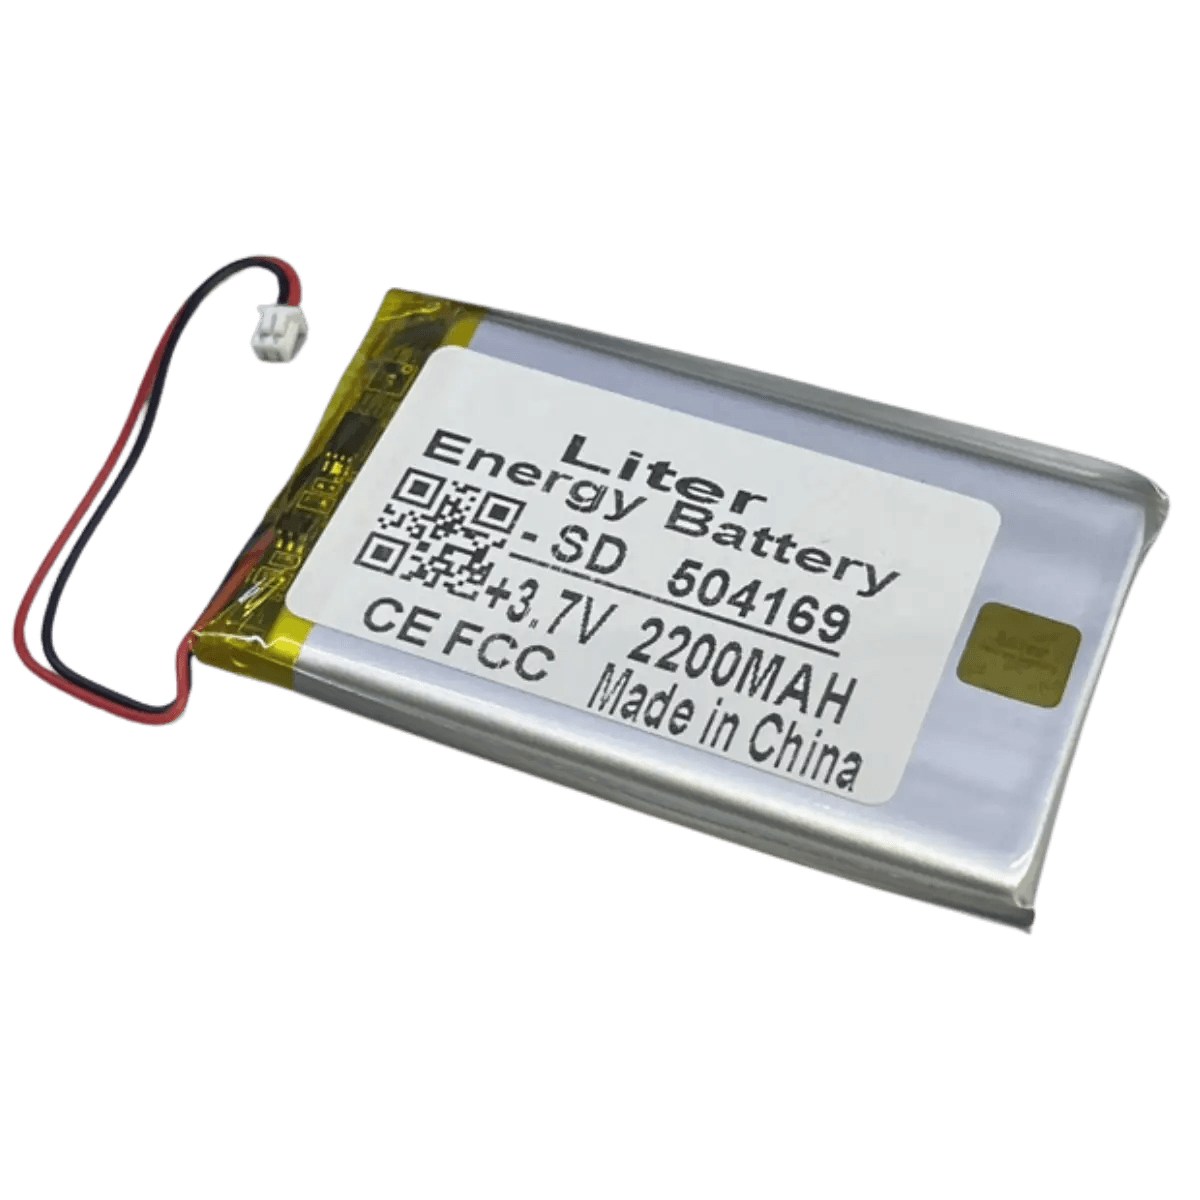 Batterie - Li-Po - 3.7V - 2200mAh - 504169 avec connecteur 1.25mm